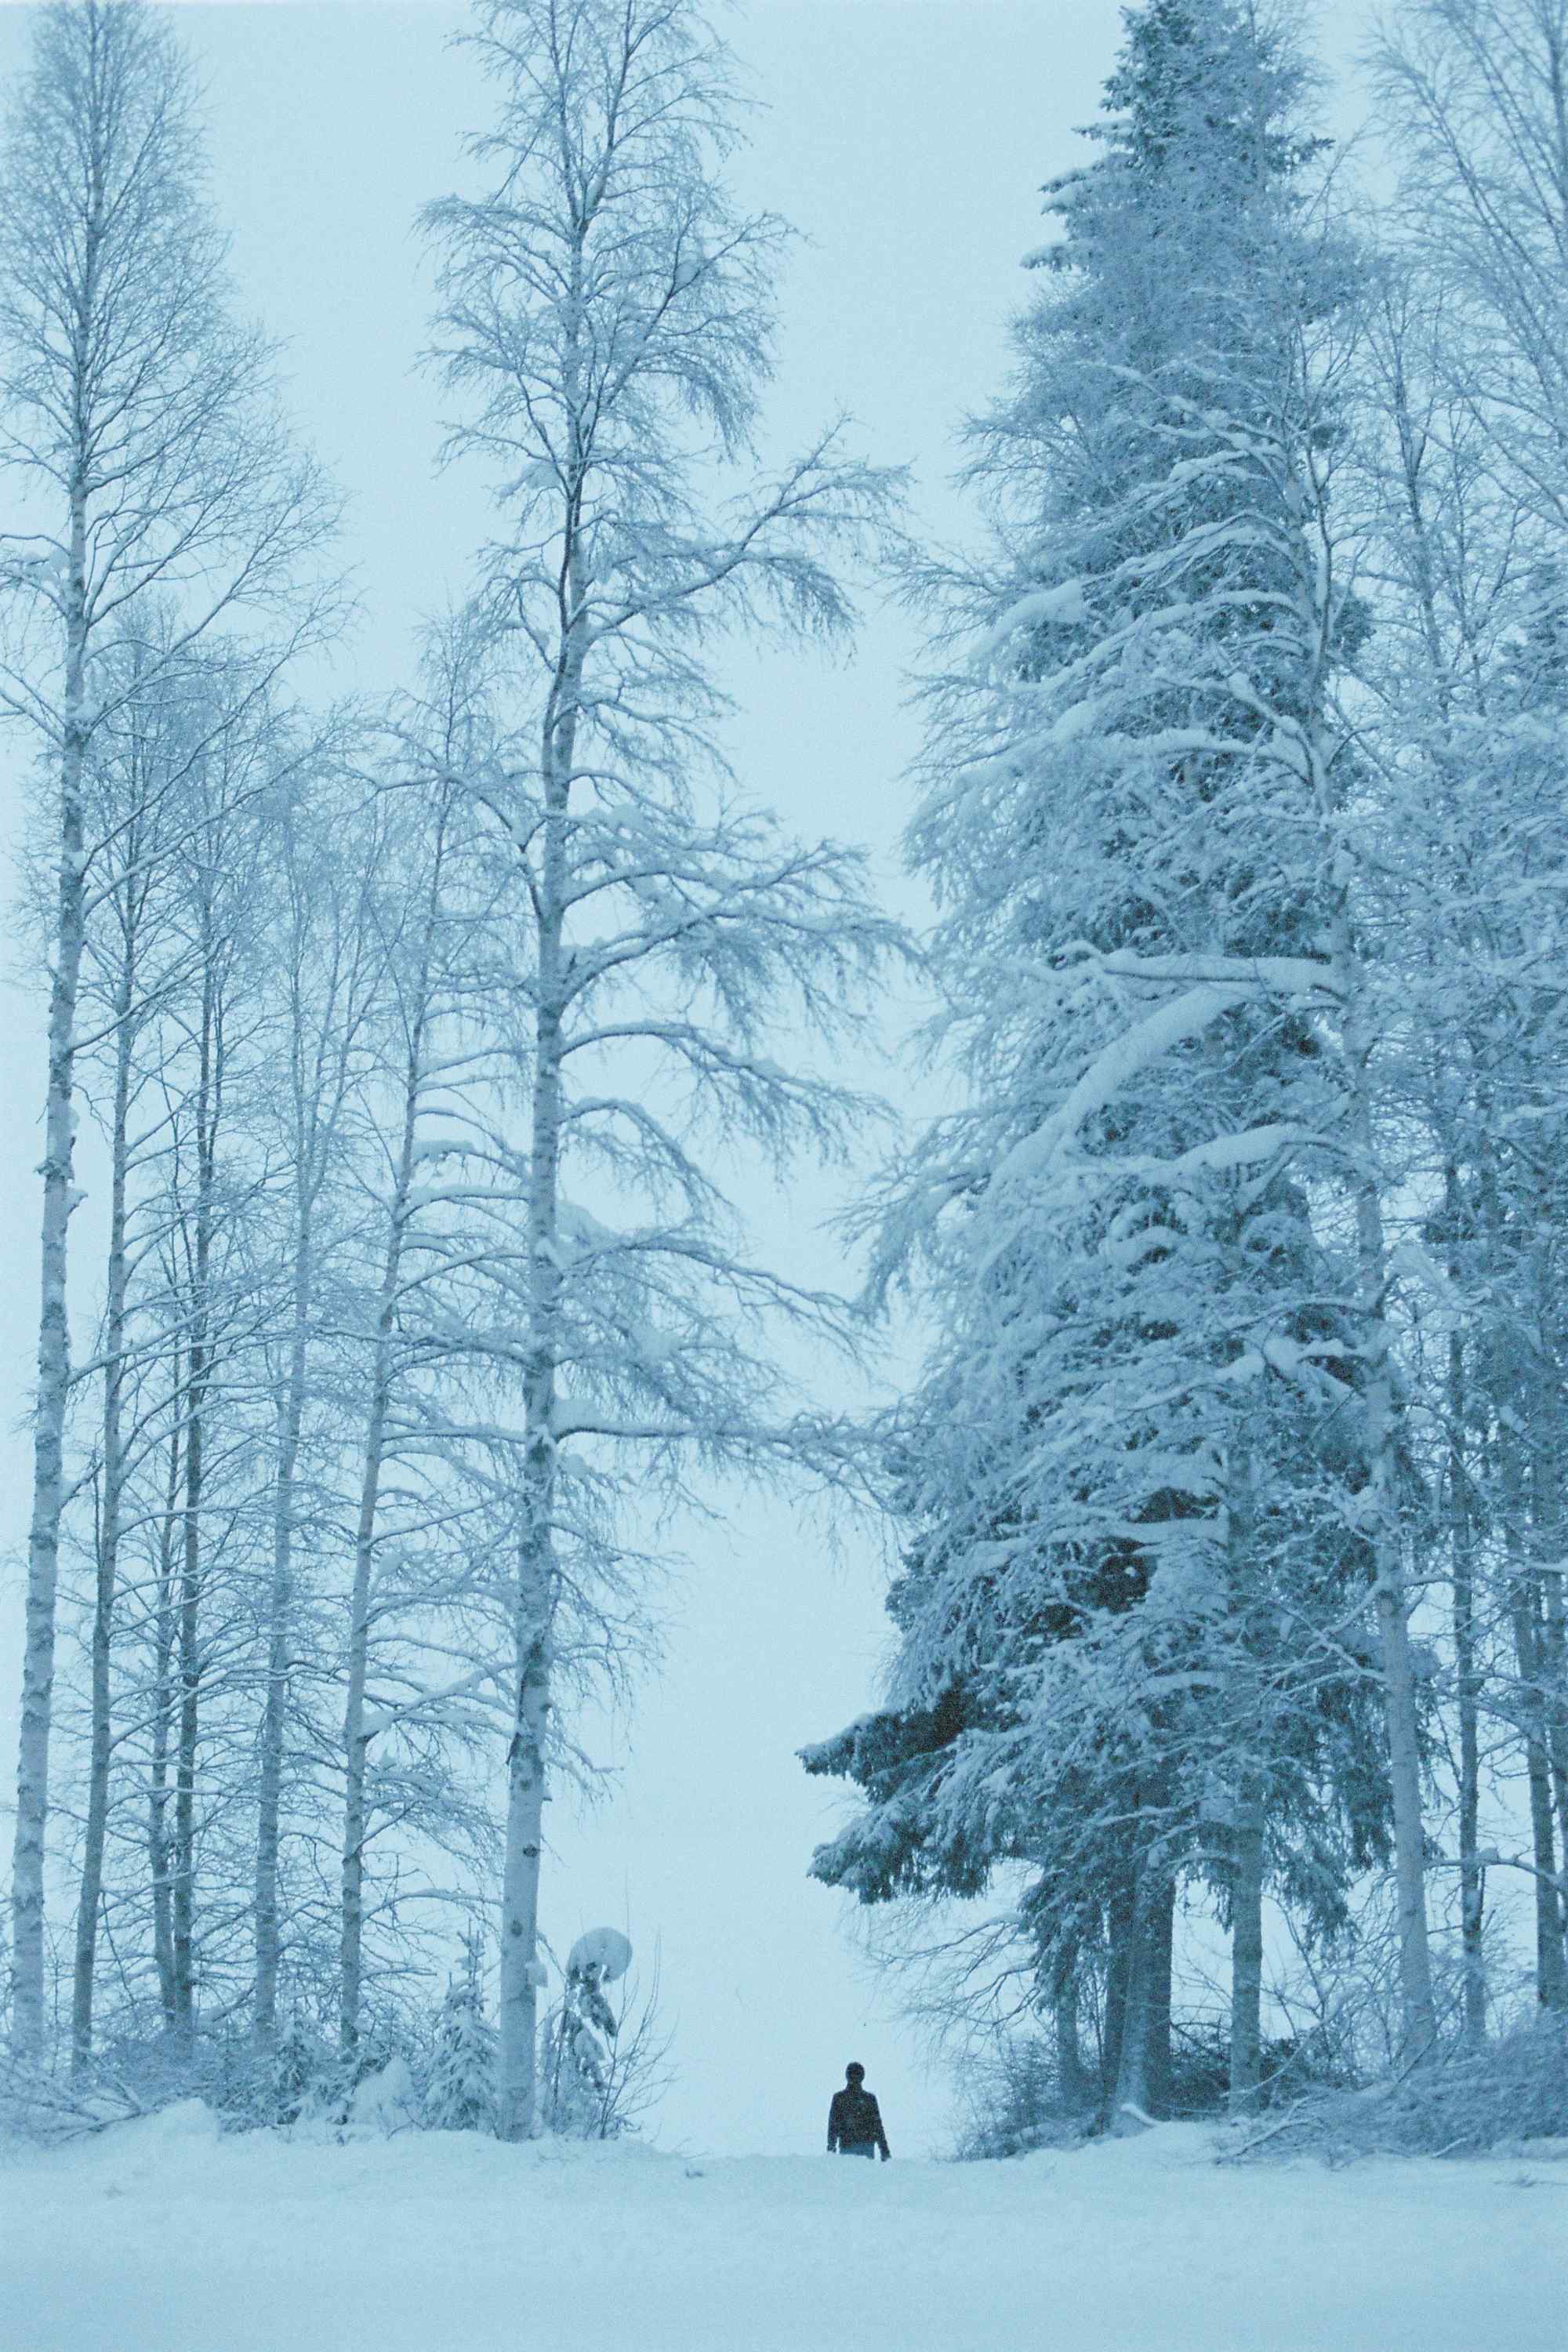 一个人看风景北欧浪漫山林雪景手机壁纸